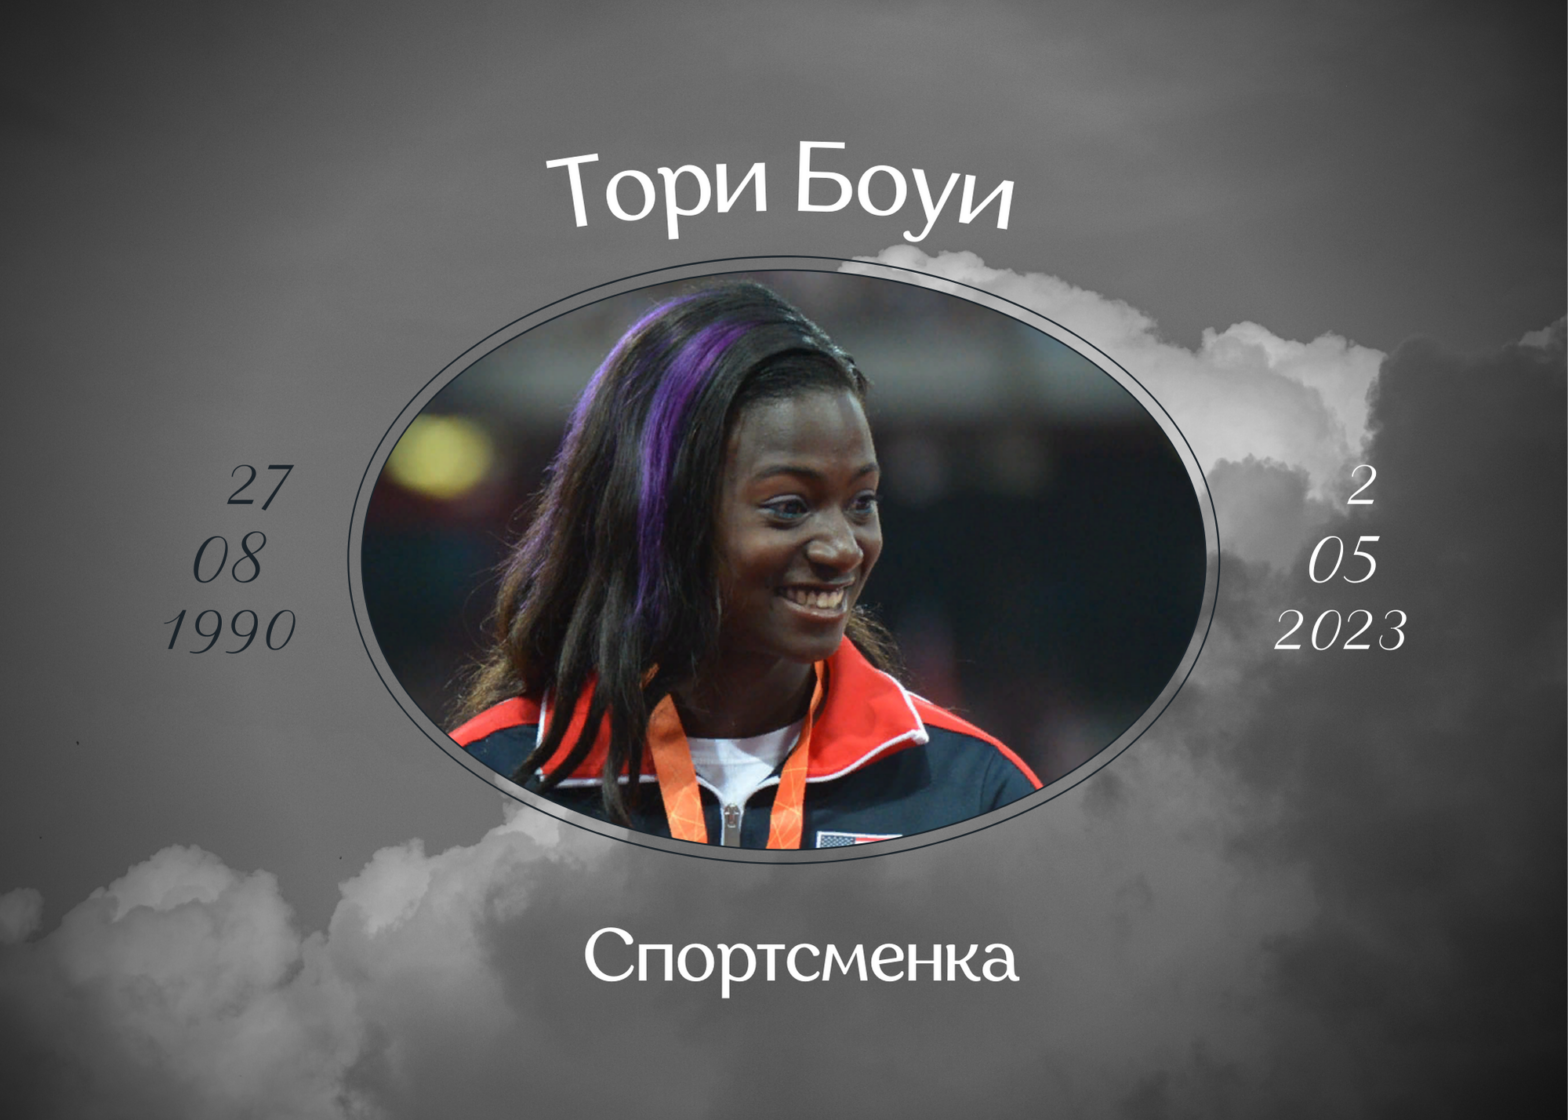 Умерла чемпионка по лёгкой атлетике Тори Боуи